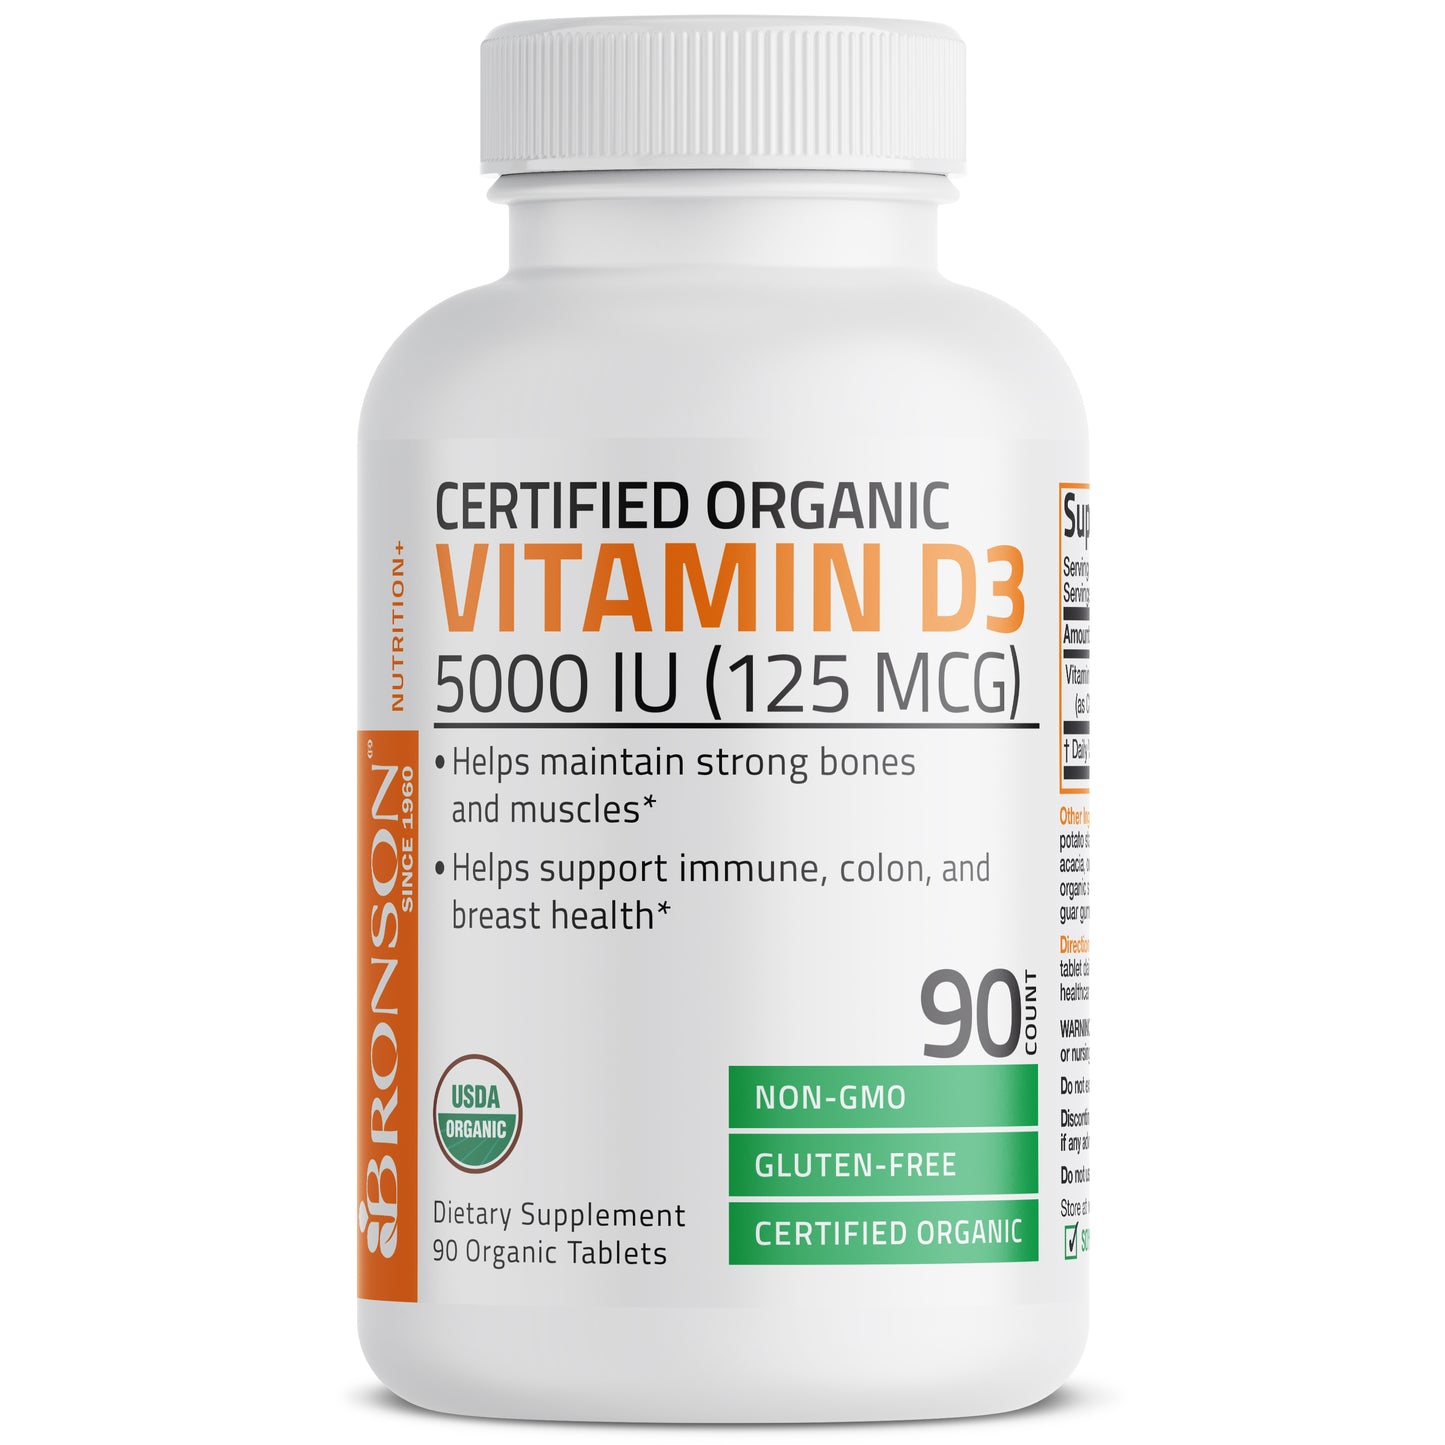 Vitamin D3 USDA Certified Organic - 5,000 IU